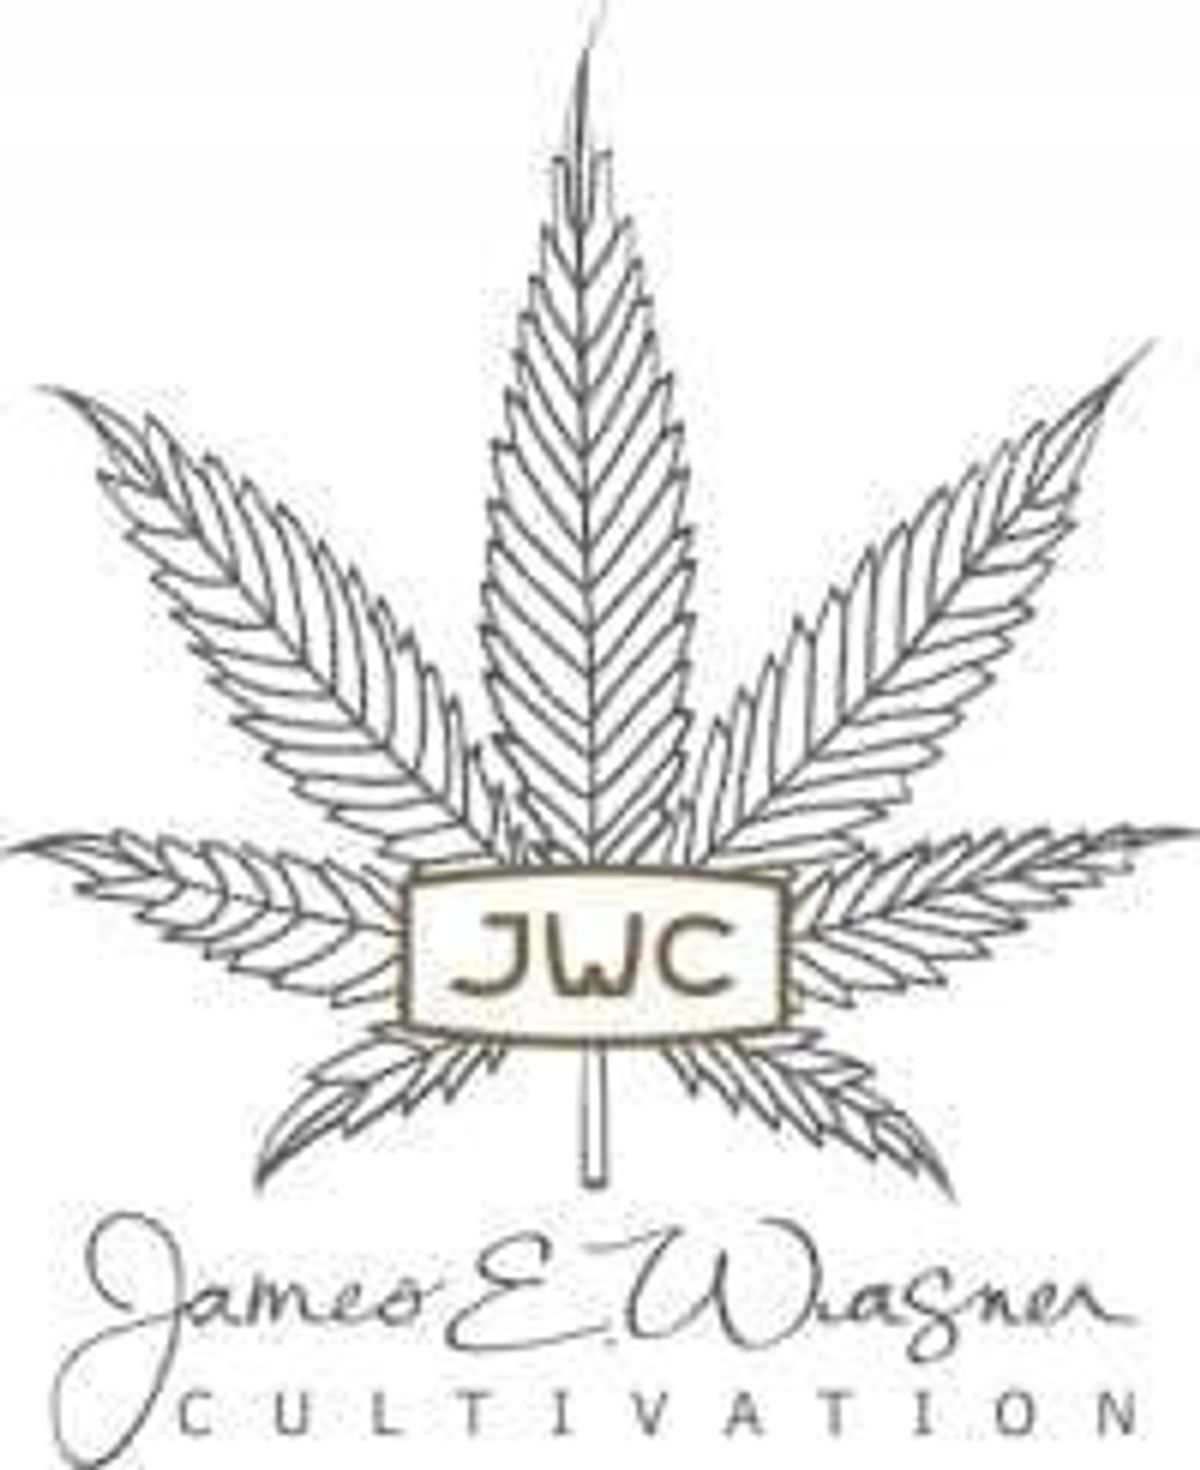 OTC:JWCAF